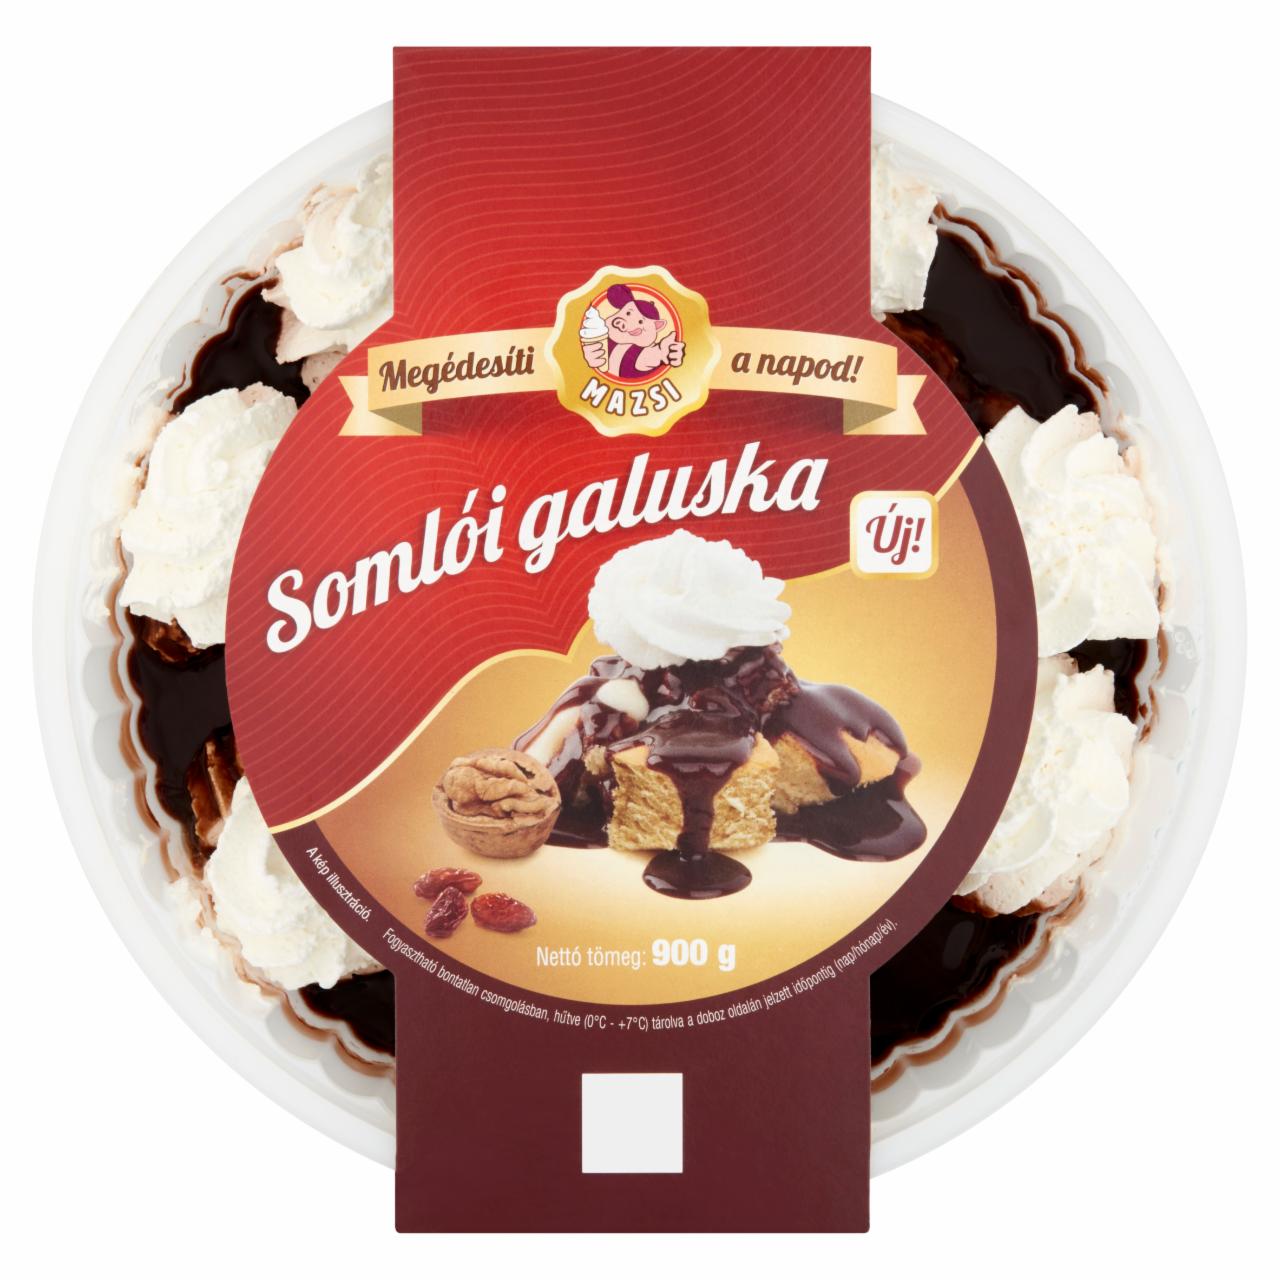 Photo - Mazsi Somlói Galuska Sponge Cake with Vanilla & Chocolate Sauce, Raisins & Whipped Cream 900 g